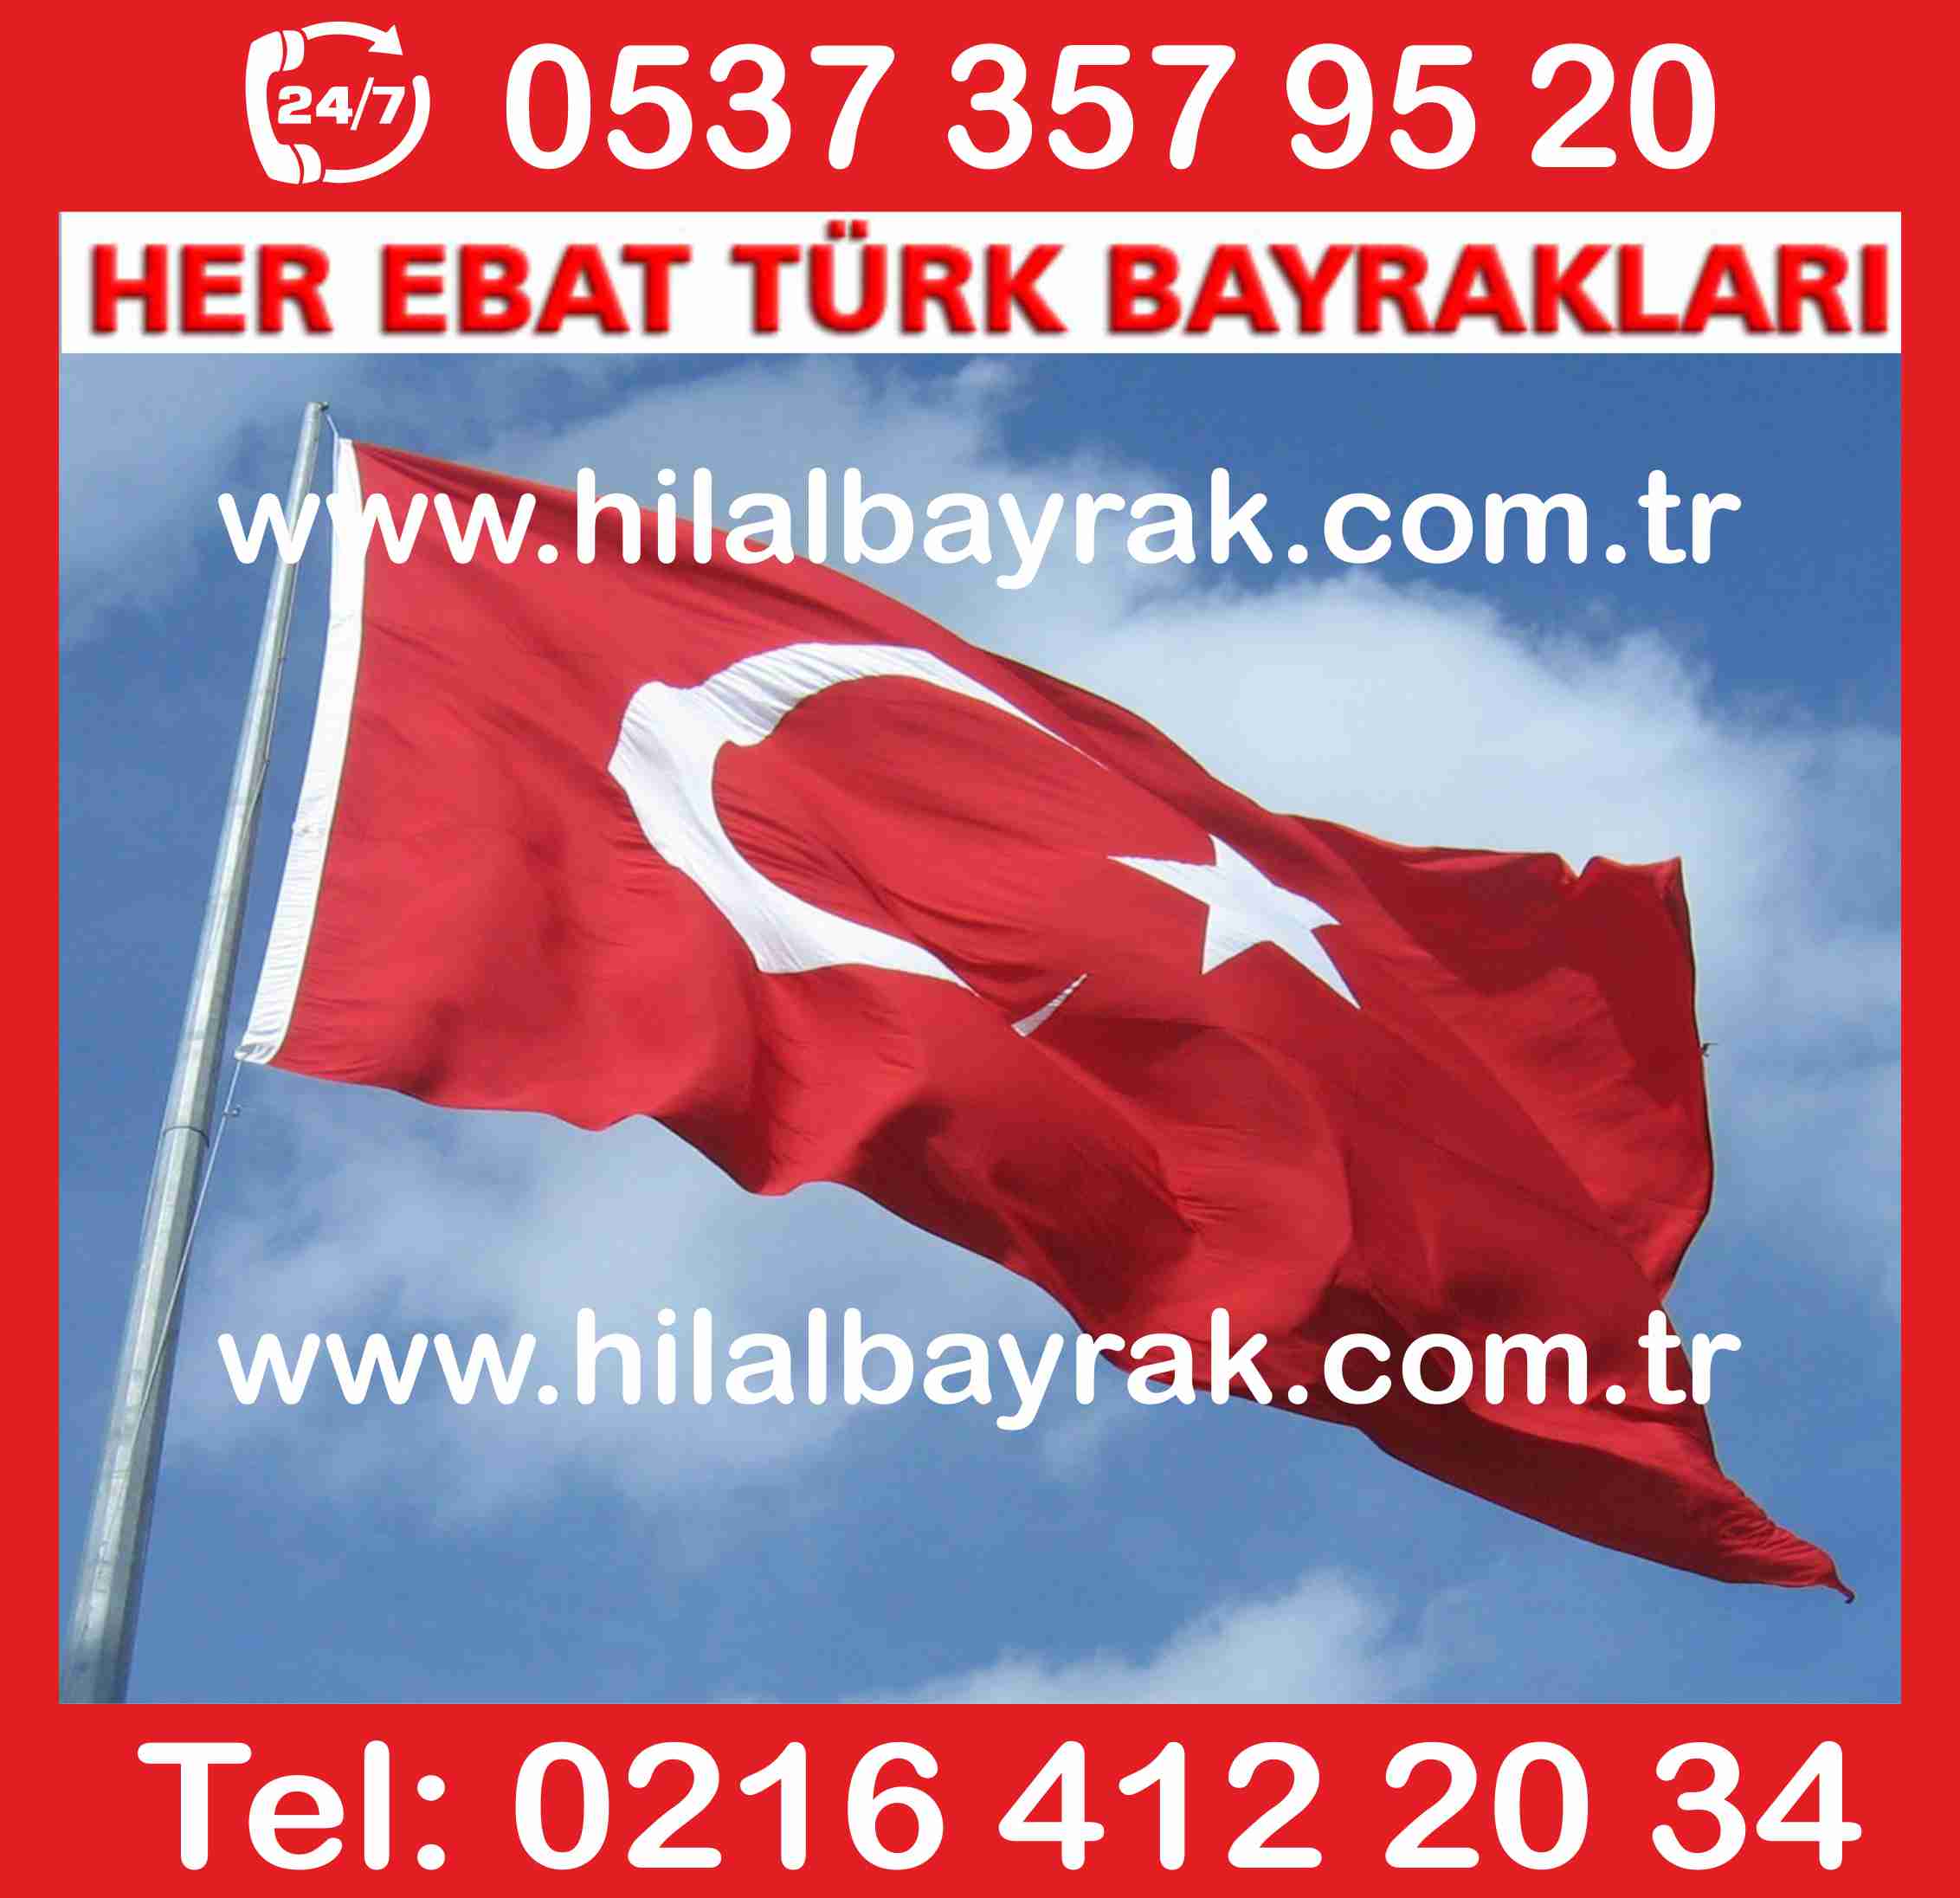 Türk Bayrağı  türk bayrak Türk Bayrakları türk bayrak imaları türk bayrak şatışı ümraniye